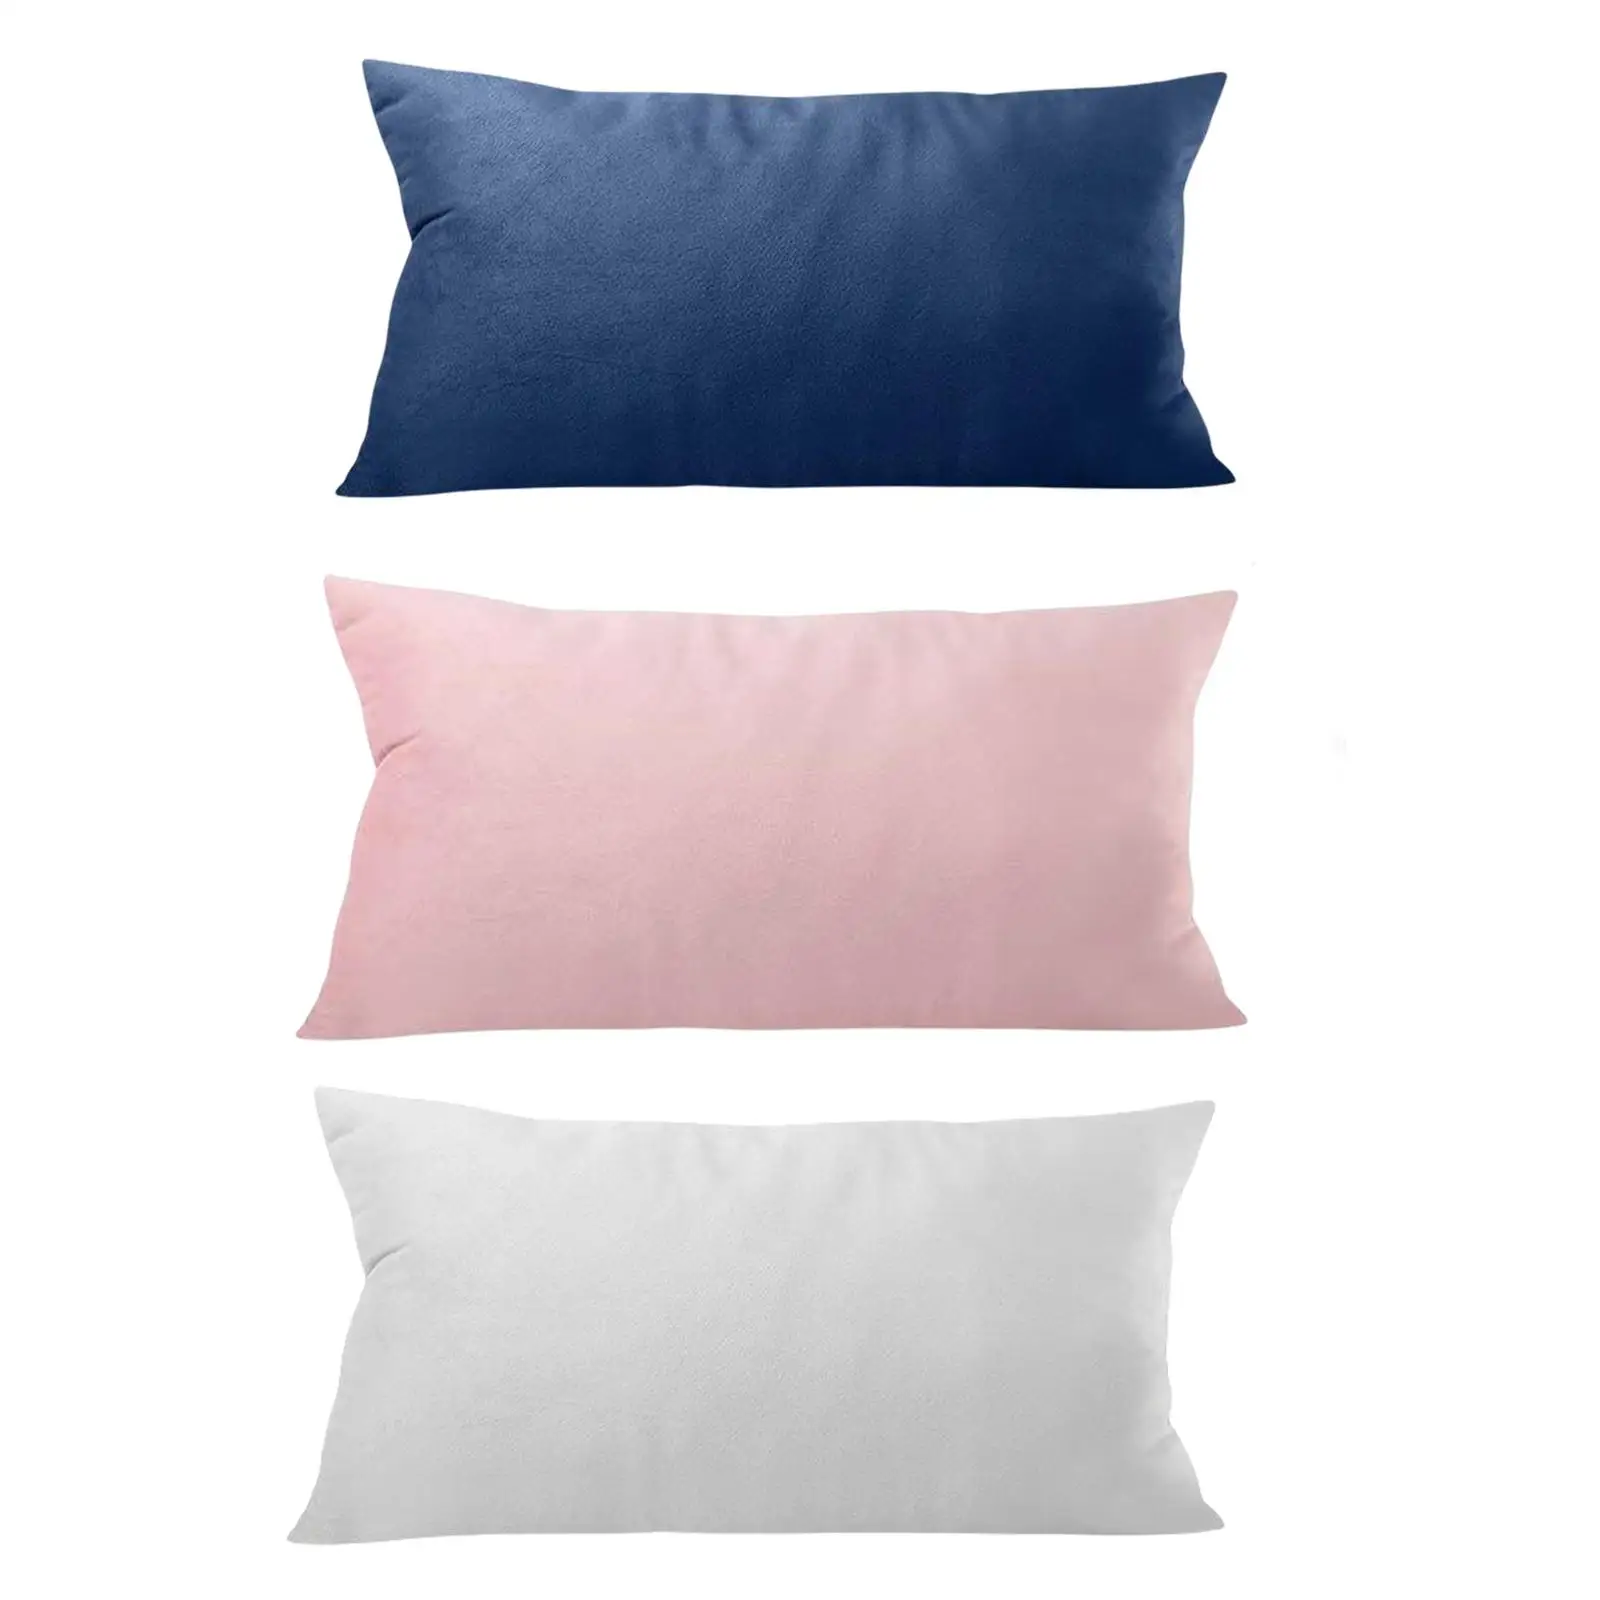 Head Cushion Pillow with pillow Pillow Back Bolster Pillow Lumbar Pillows for Folding Chair Leg Rest and Tension Headrest